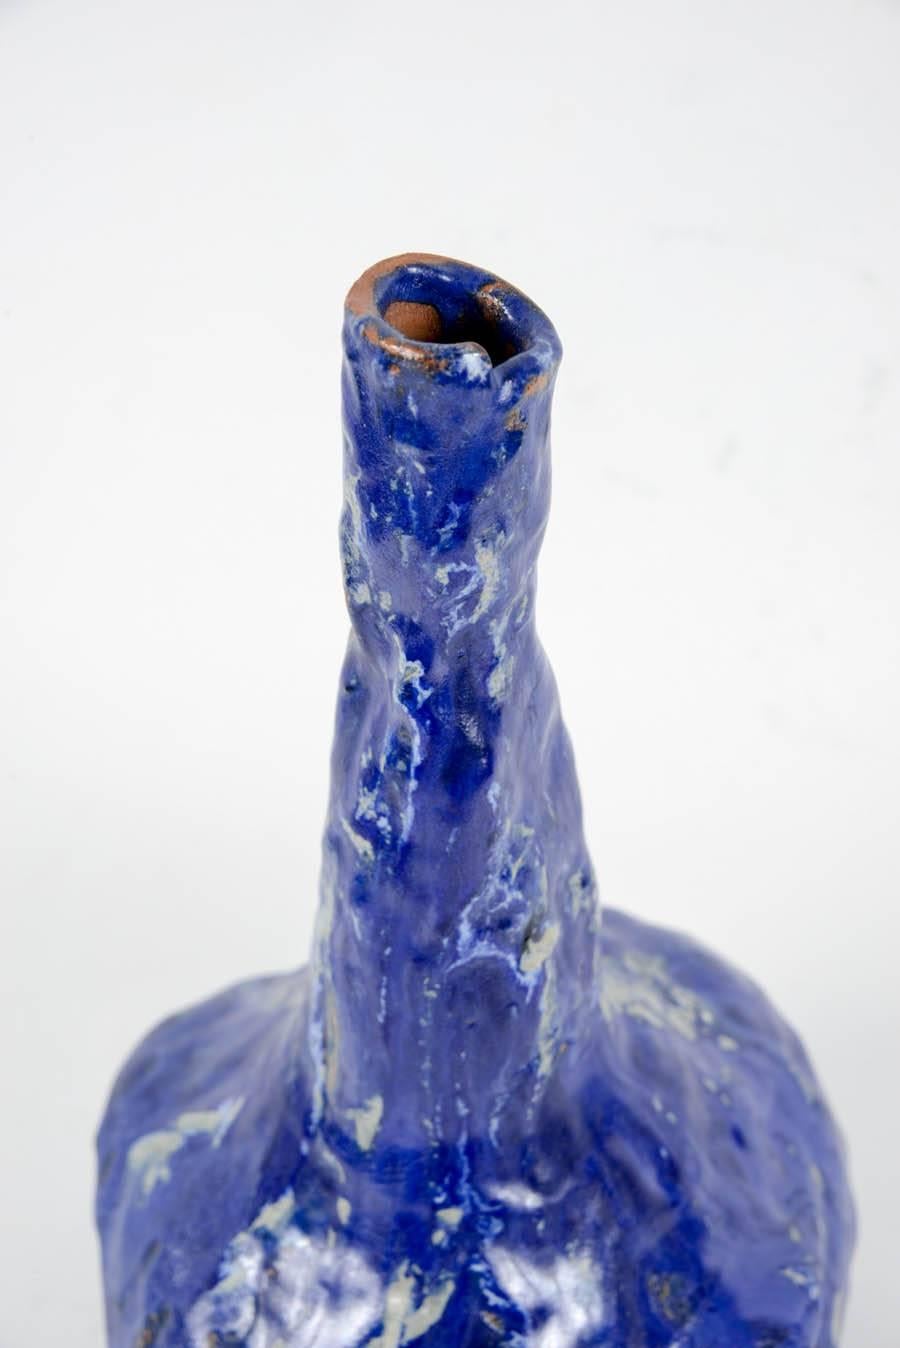 Mid-20th Century Marcello Fantoni Beautiful Blue Ceramic Vase, circa 1950